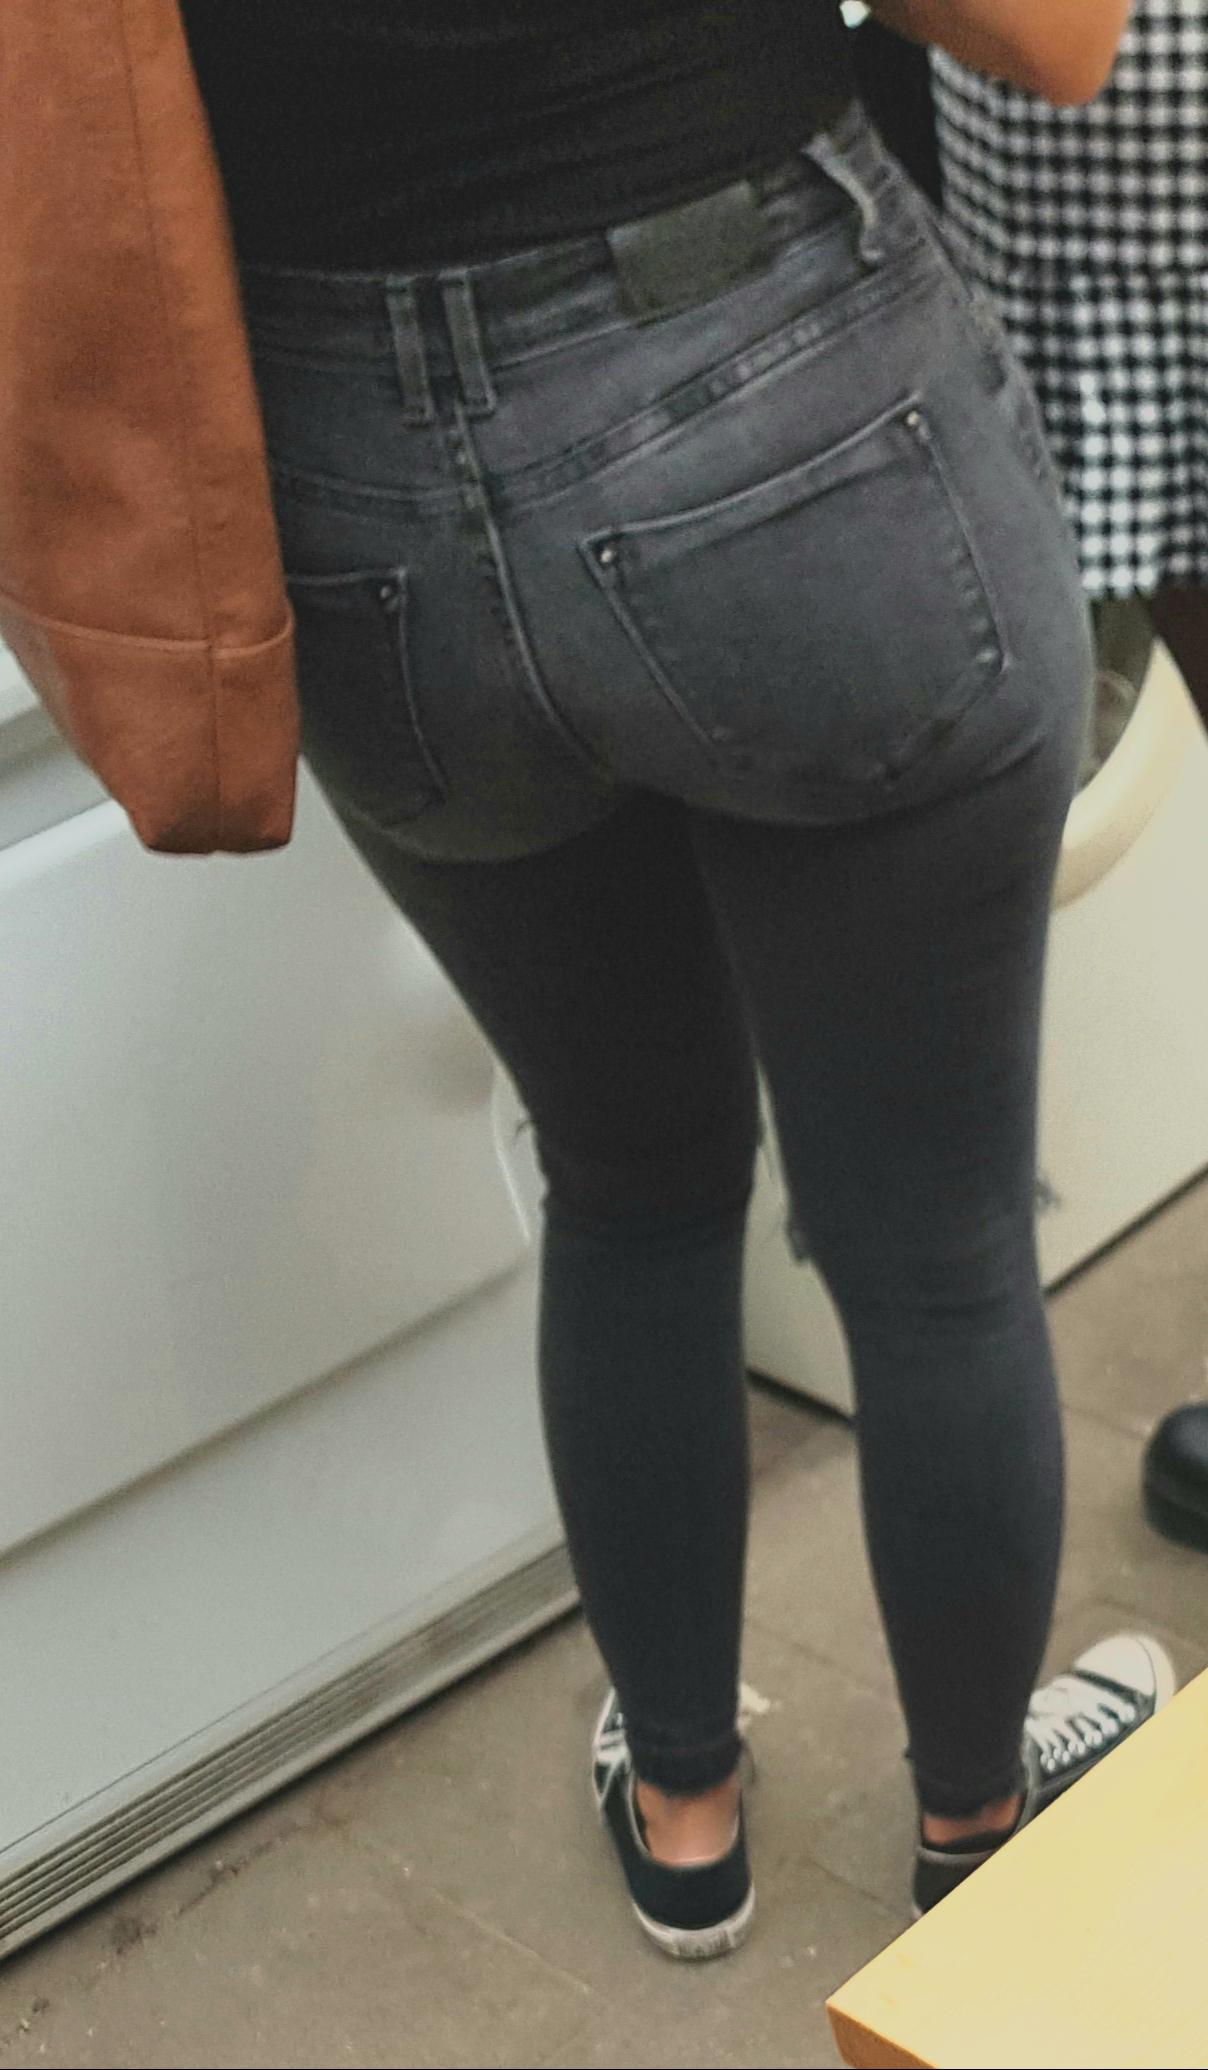 I Love It When She Wears Tight Jeans Scrolller